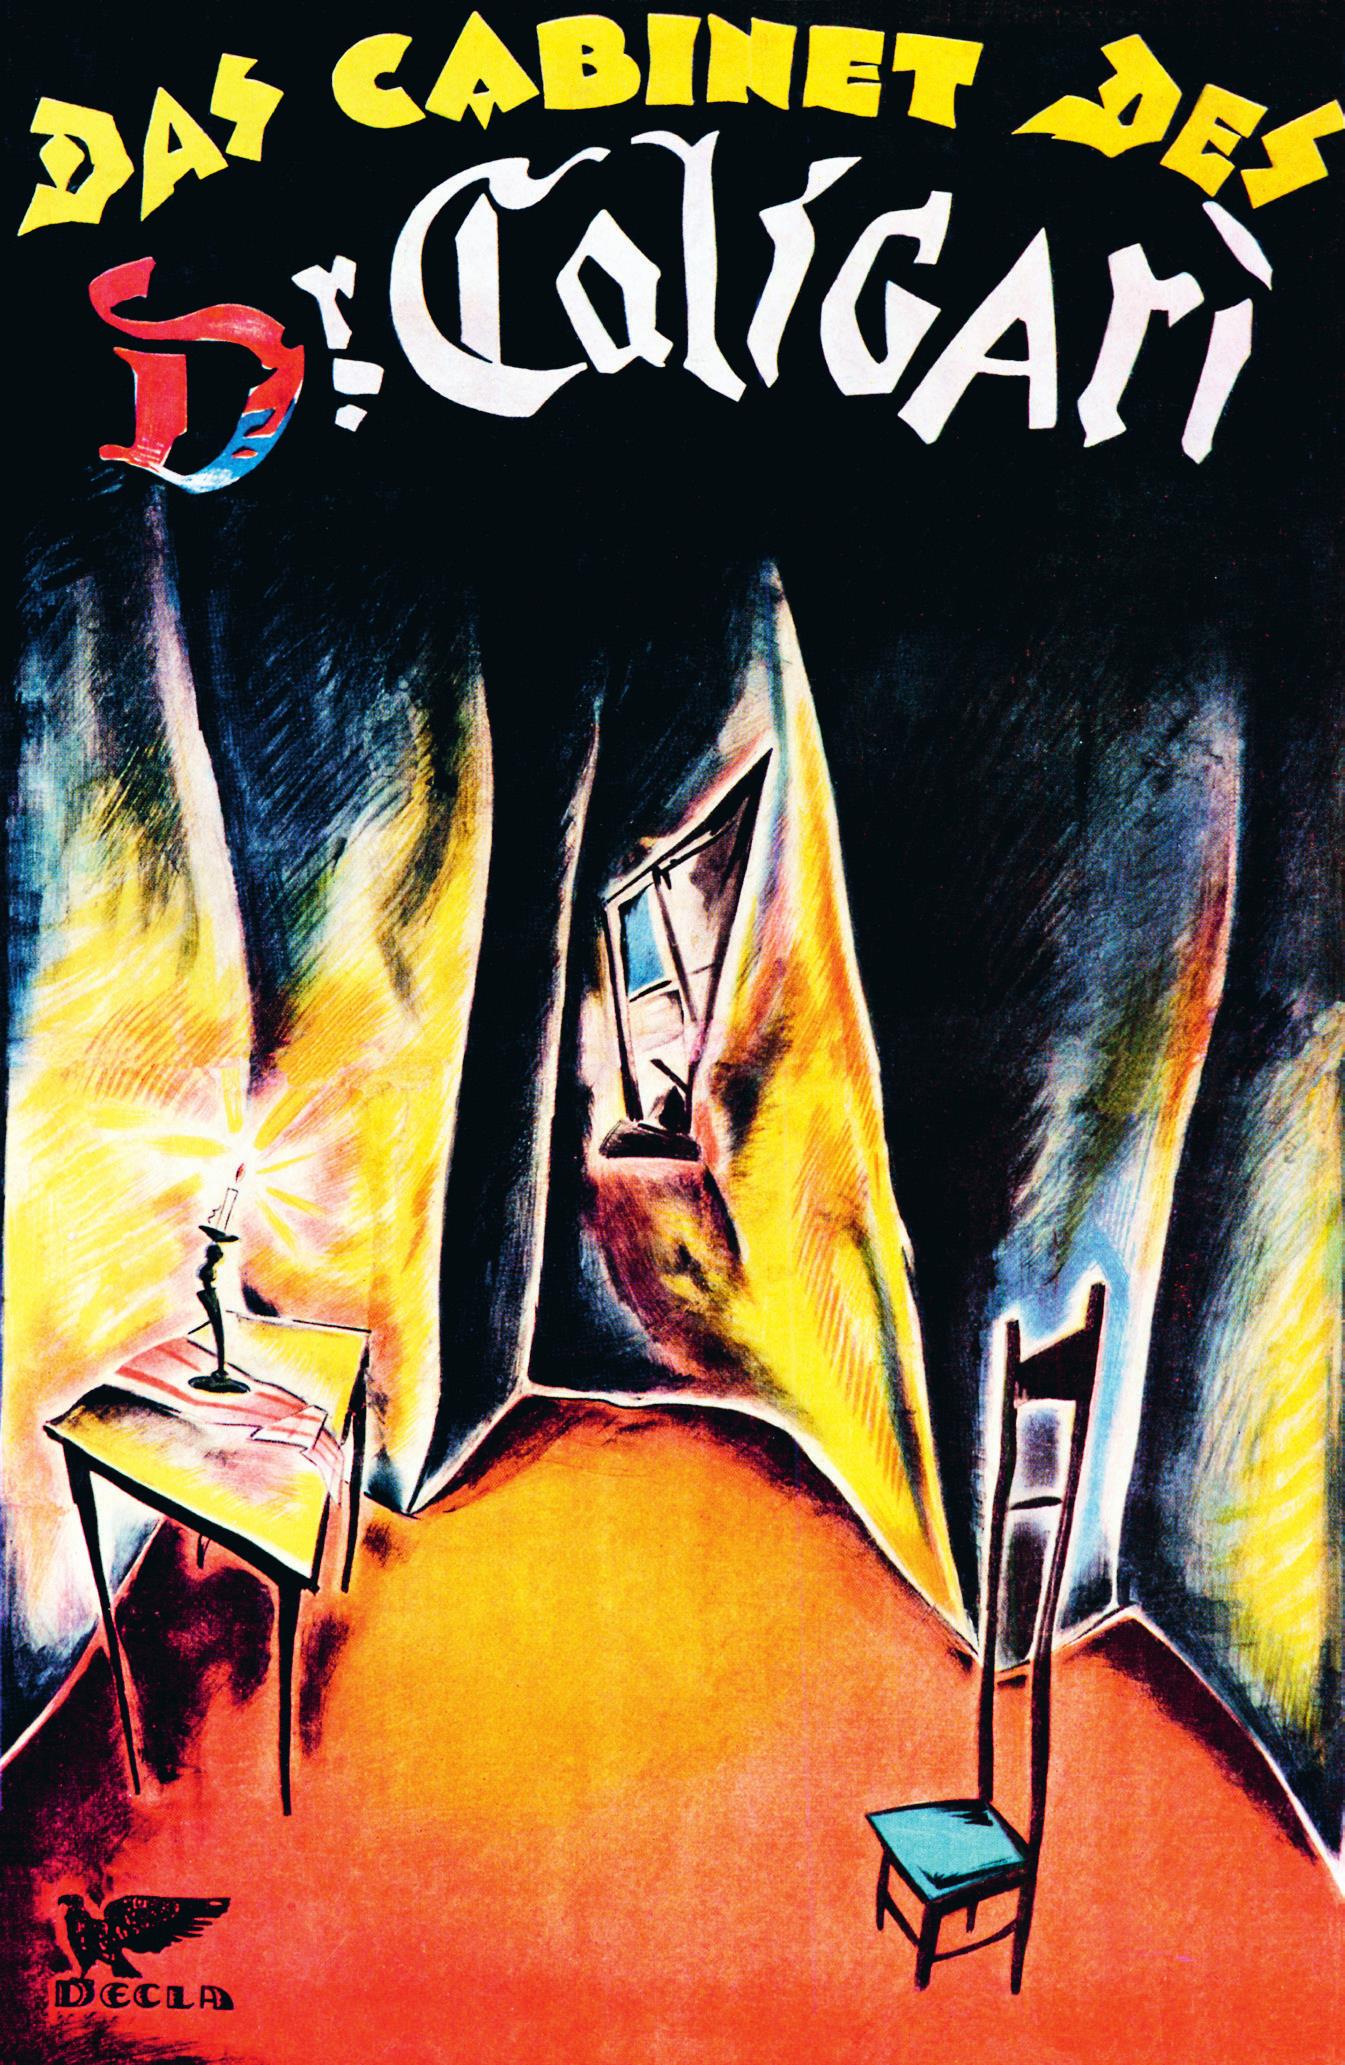 《卡里加里博士的小屋》 （1920） 斯塔尔 - 阿普克的设计为罗伯特·威恩的单色世界增添了色彩，以最少的调色增加了环境的扭曲和不安的、怪诞的特质。